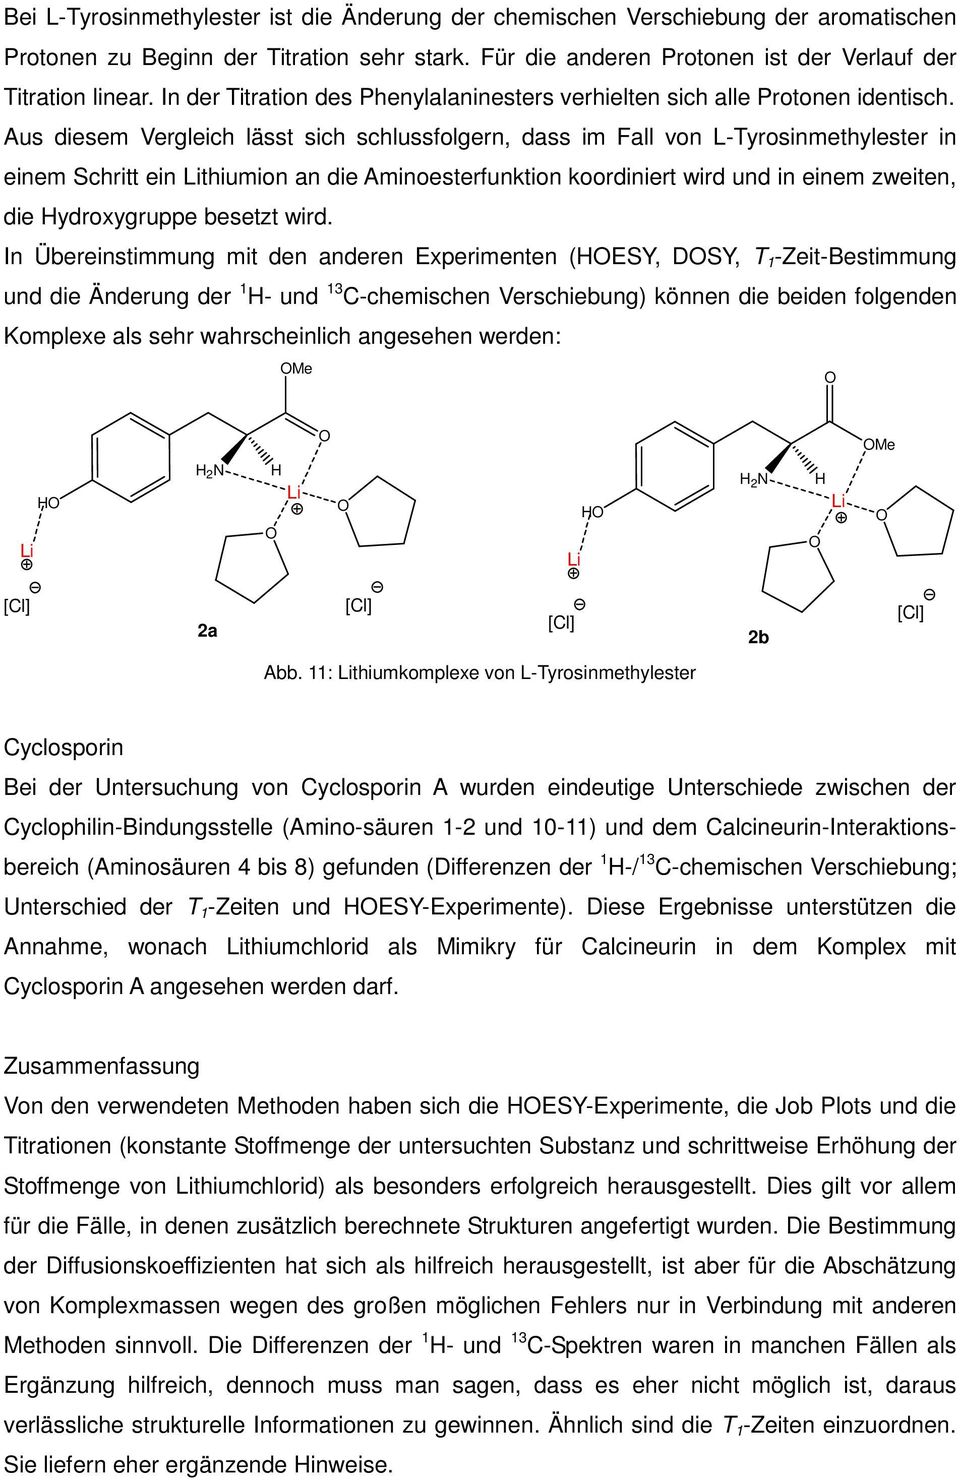 Aus diesem Vergleich lässt sich schlussfolgern, dass im Fall von L-Tyrosinmethylester in einem Schritt ein thiumion an die Aminoesterfunktion koordiniert wird und in einem zweiten, die ydroxygruppe